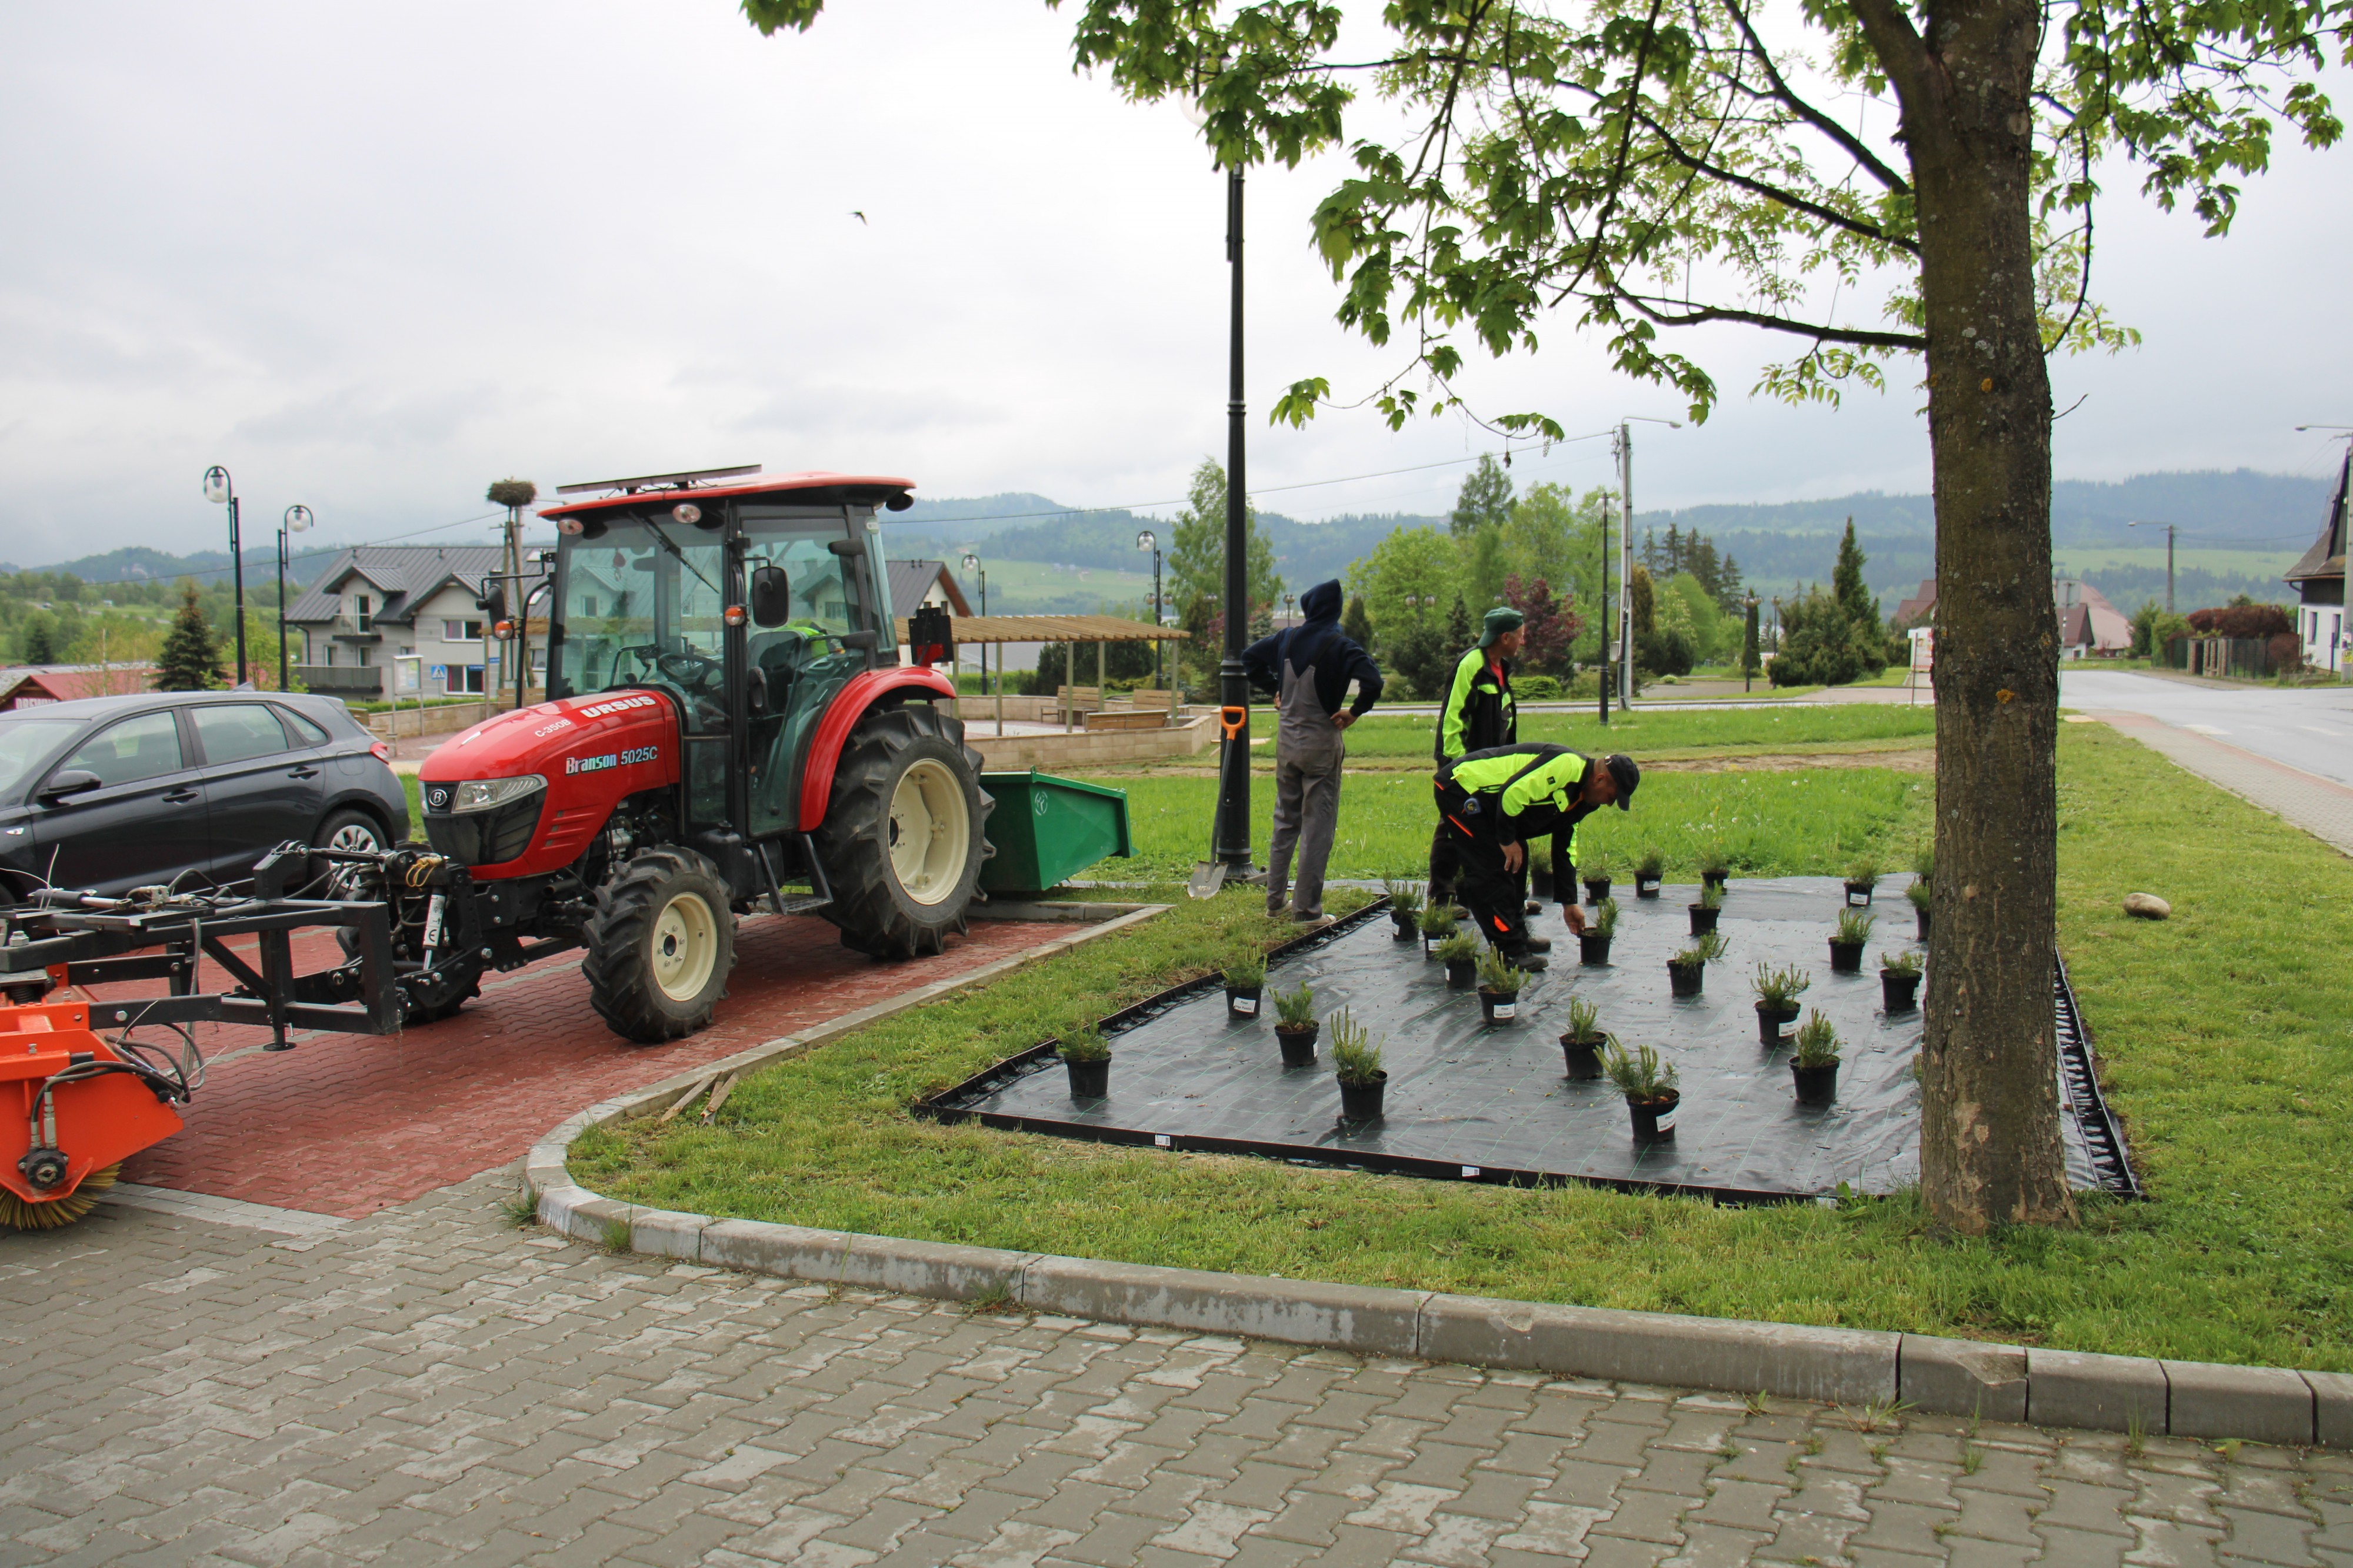 Rozpoczęto zagospodarowanie terenu zielonego tuż przed budynkiem Urzędu Gminy Czorsztyn w Maniowach.